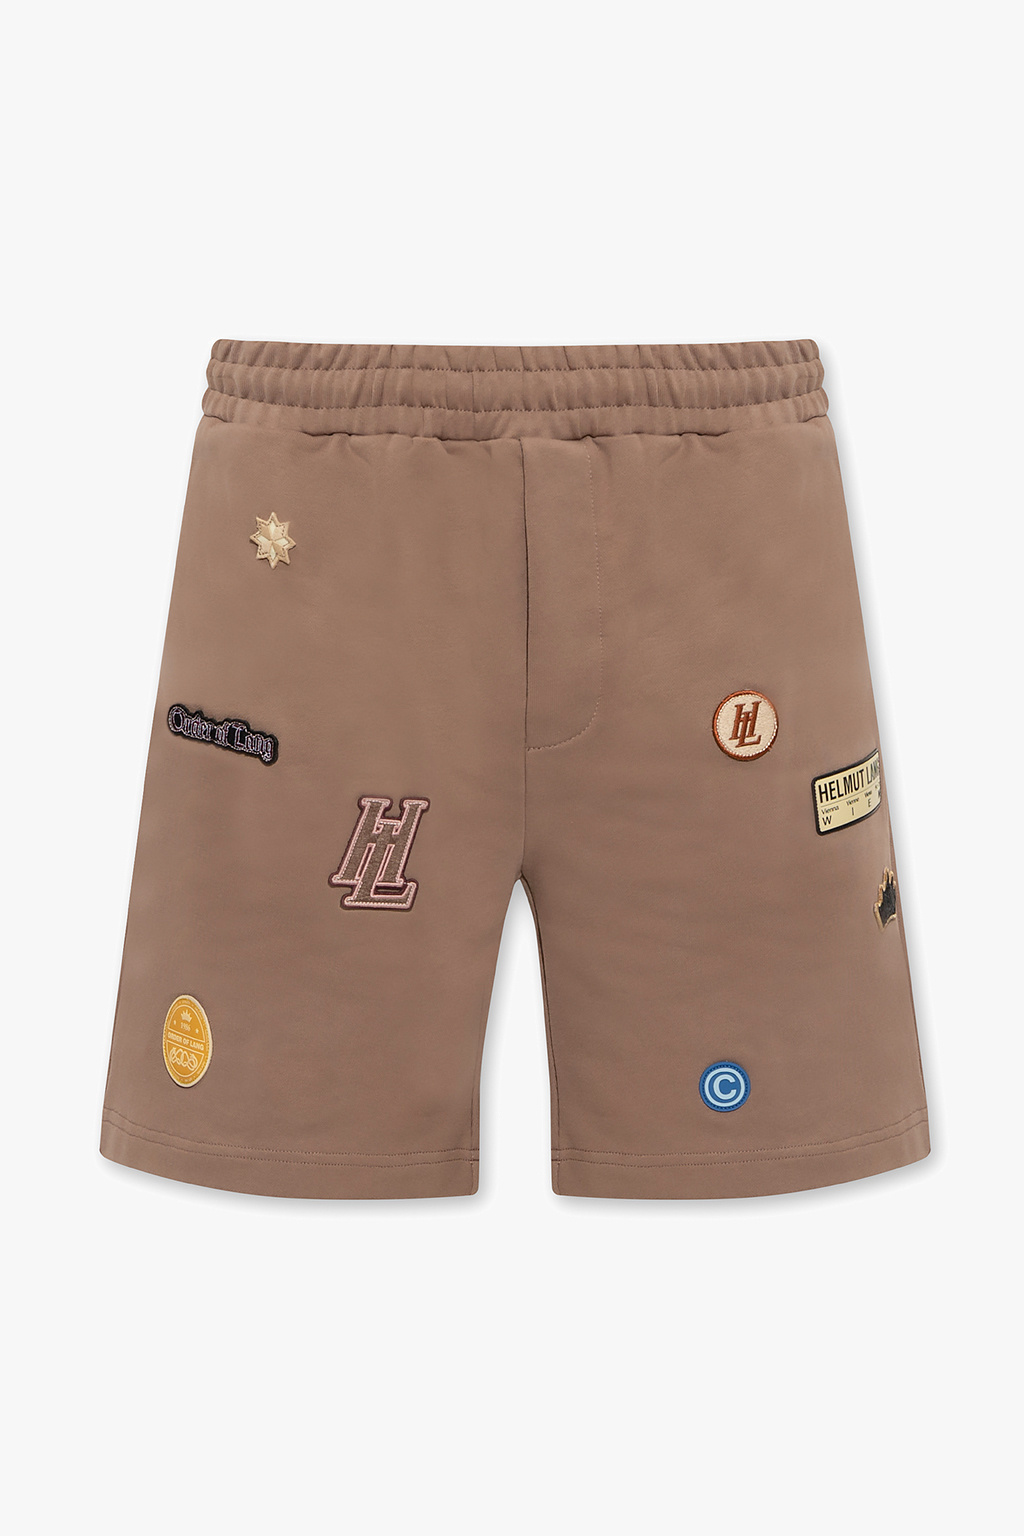 Helmut Lang Cotton shorts